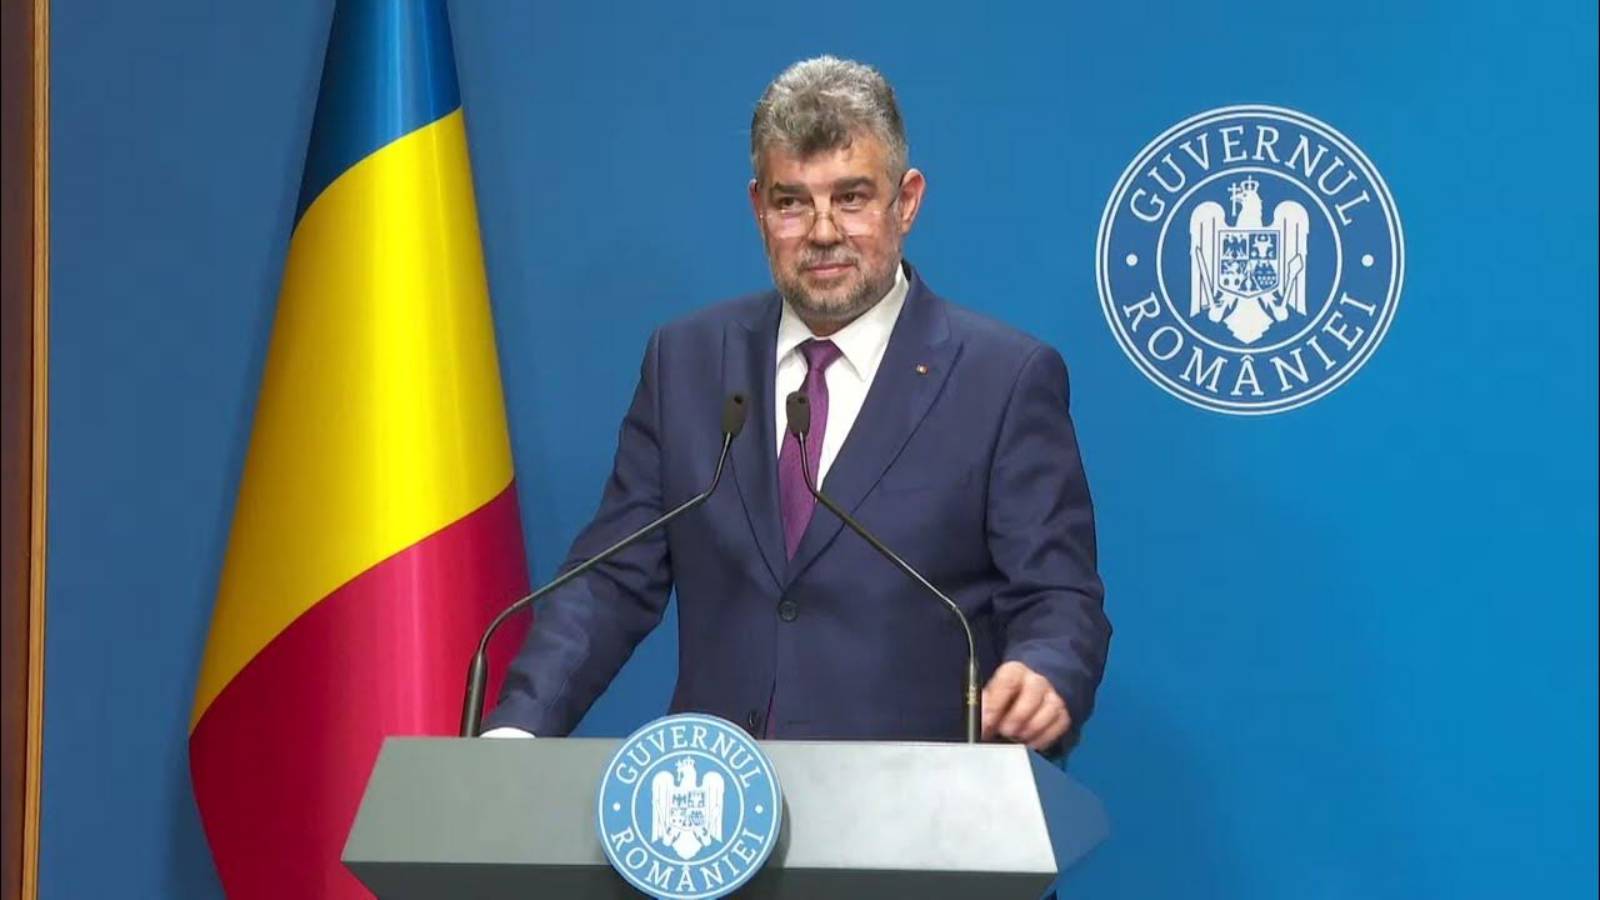 Marcel Ciolacu Confirma Cresterea Pensiilor Romania Procente Majoreaza